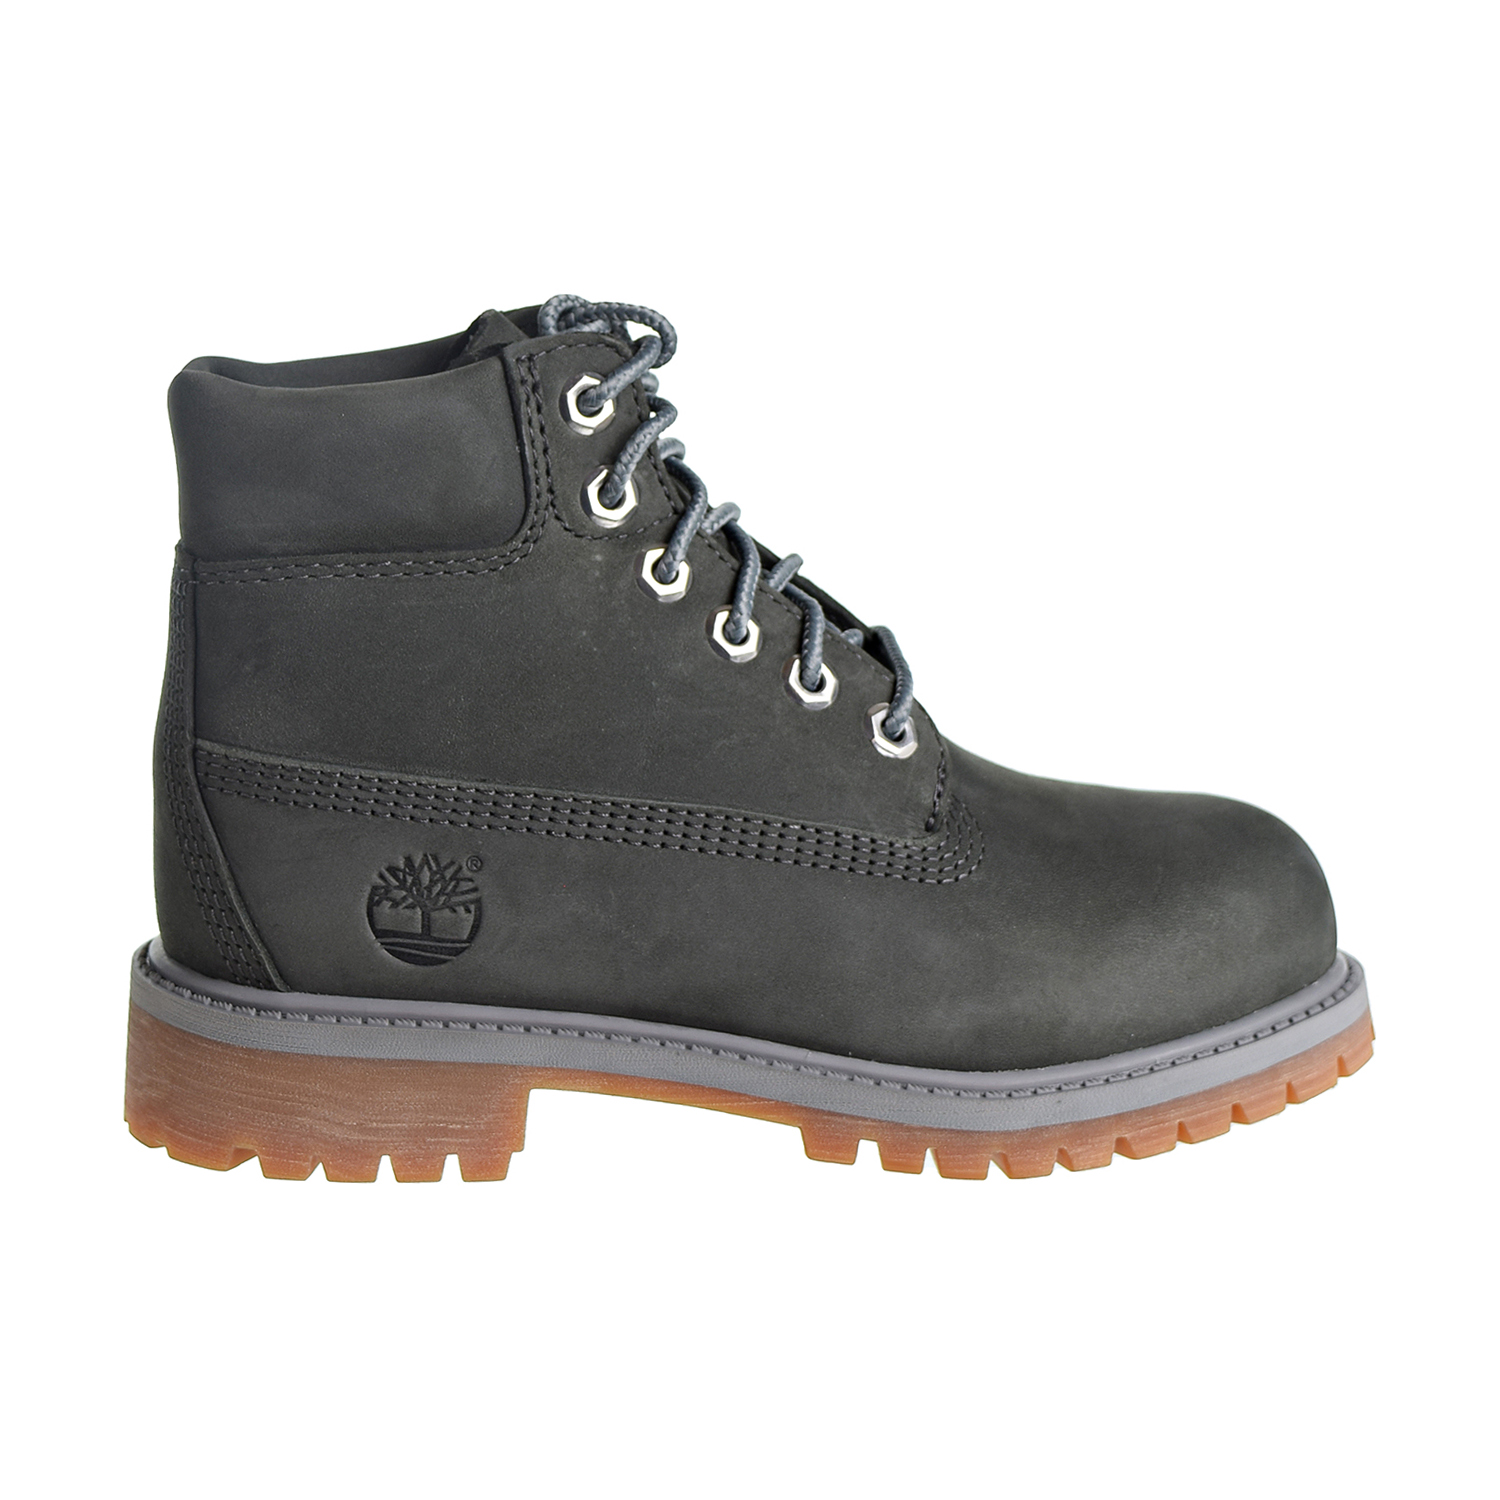 grey waterproof boots